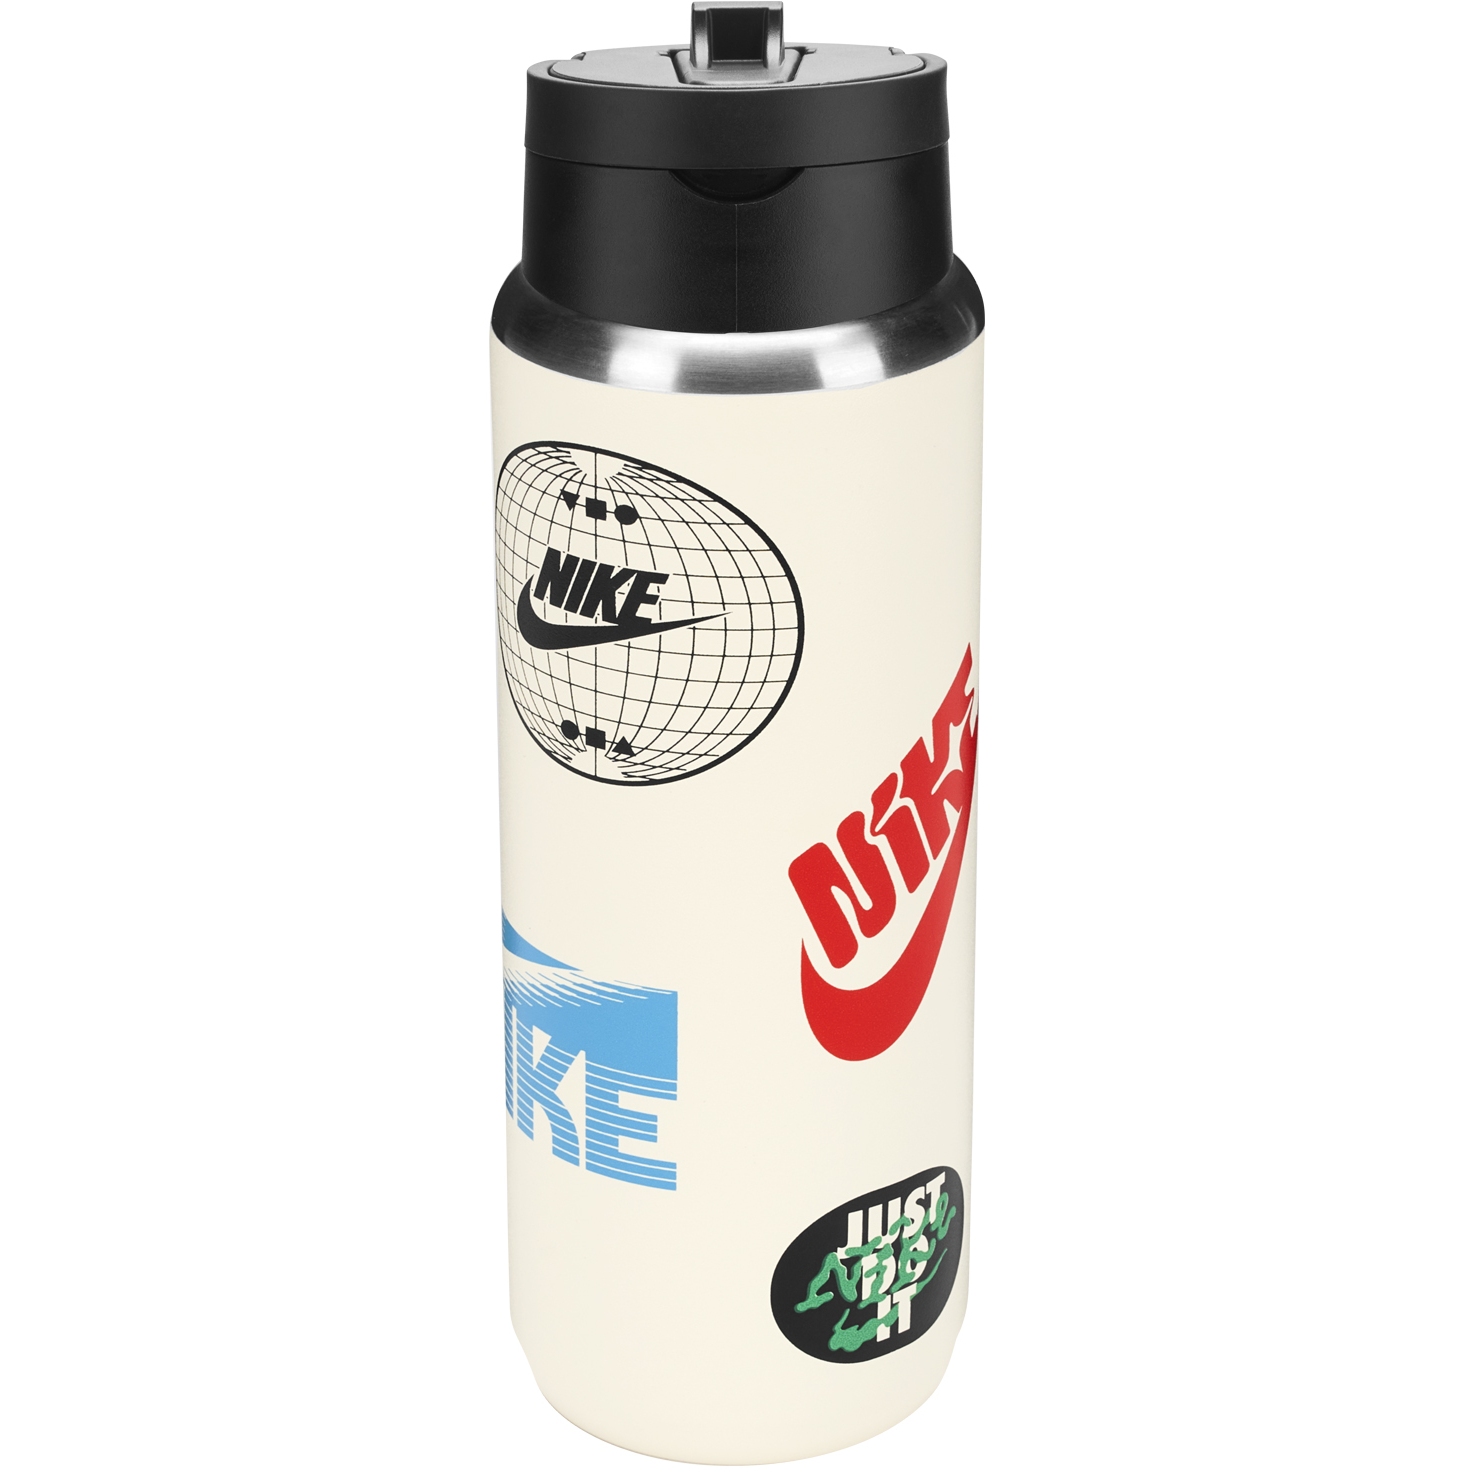 Produktbild von Nike Edelstahl Recharge Straw Trinkflasche 24 oz Graphic / 709ml - coconut milk/black/picante red 120